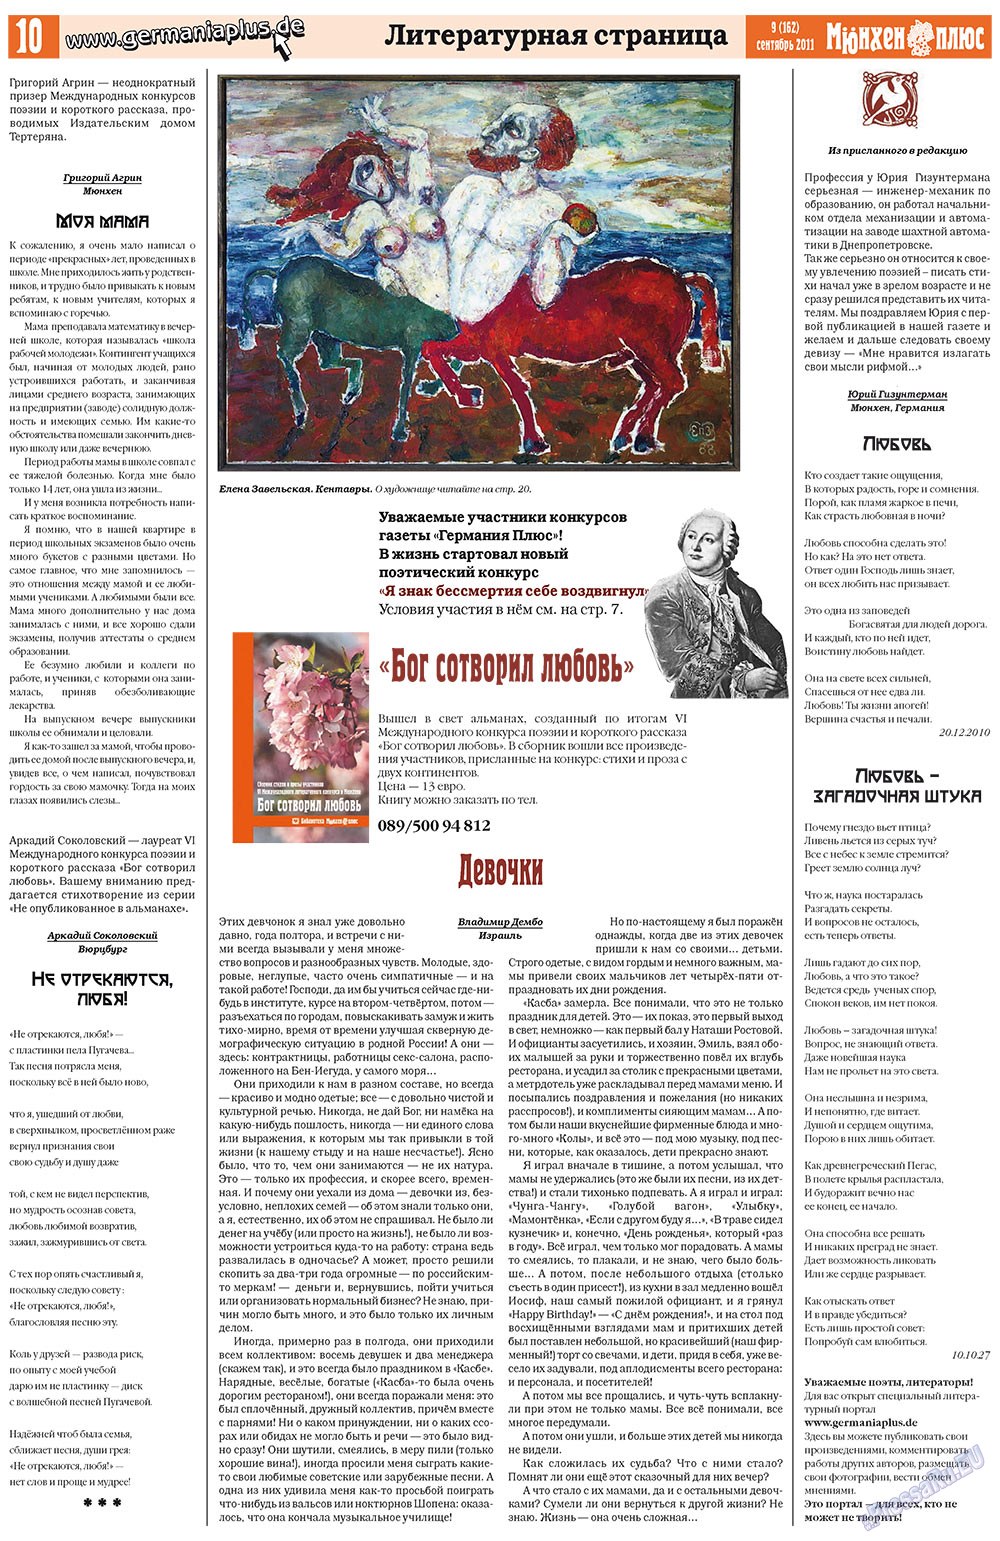 Германия плюс, газета. 2011 №9 стр.10